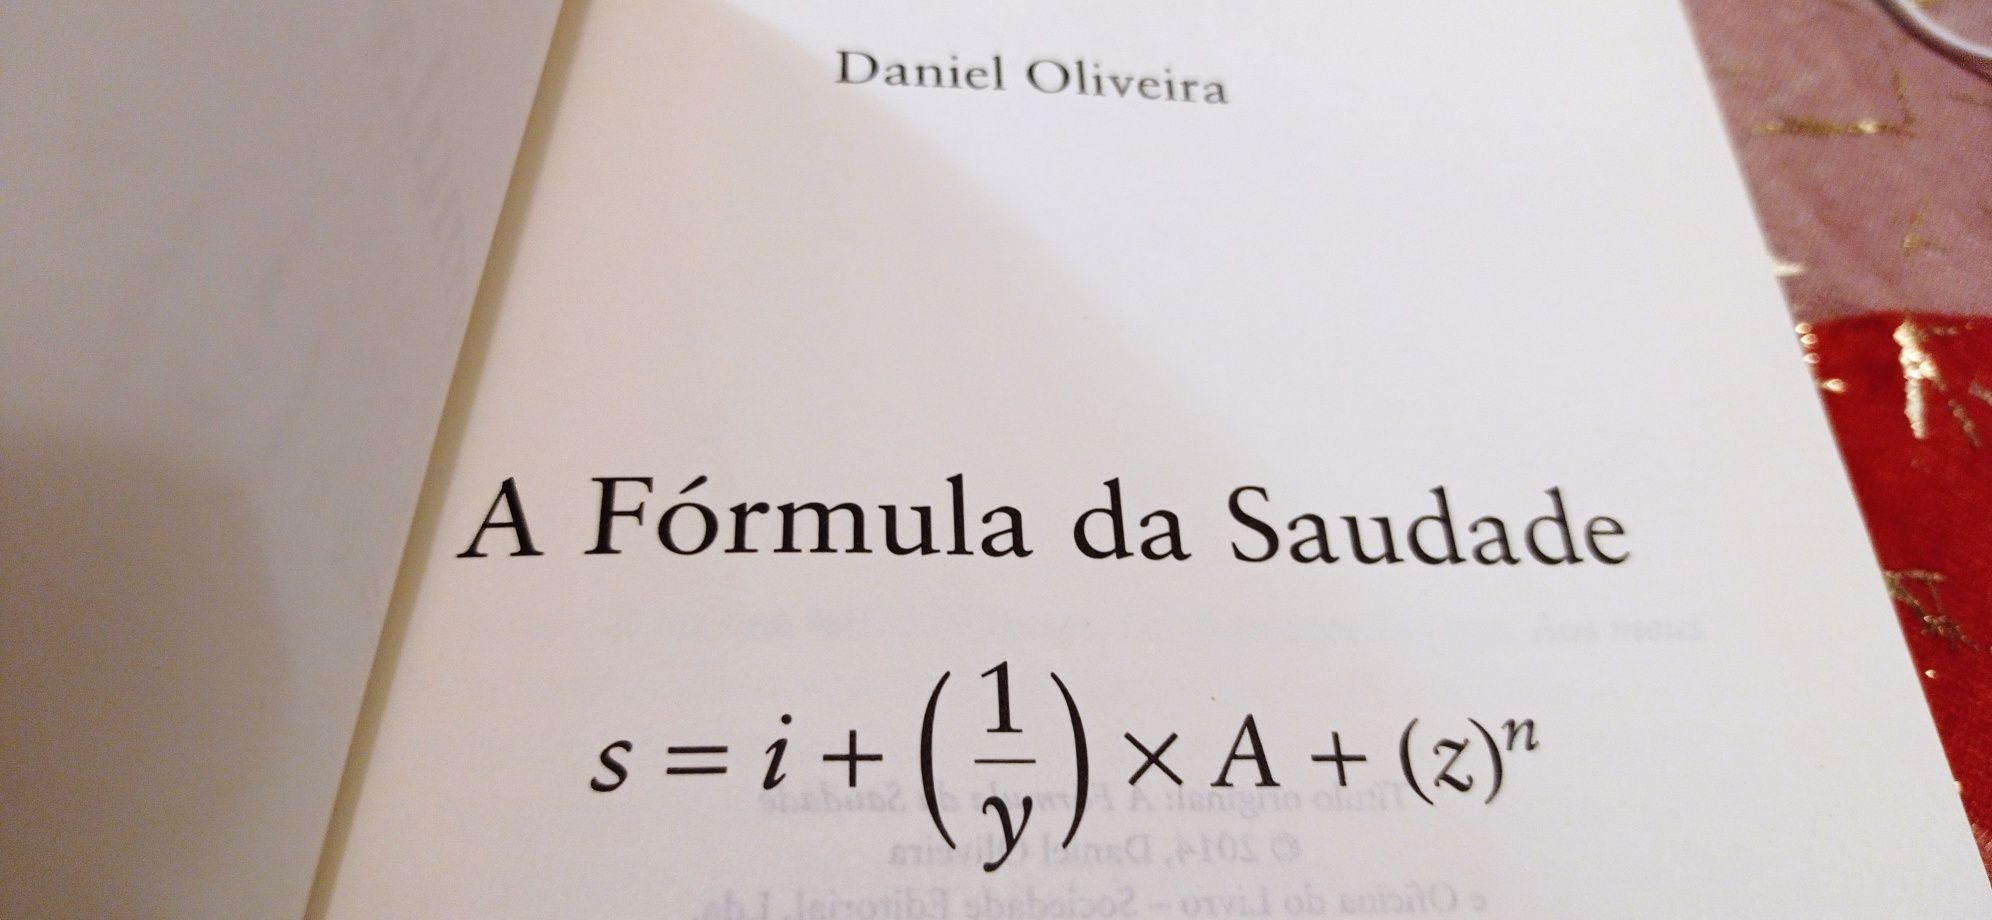 Vendo livro "A fórmula da saudade" de Daniel Oliveira